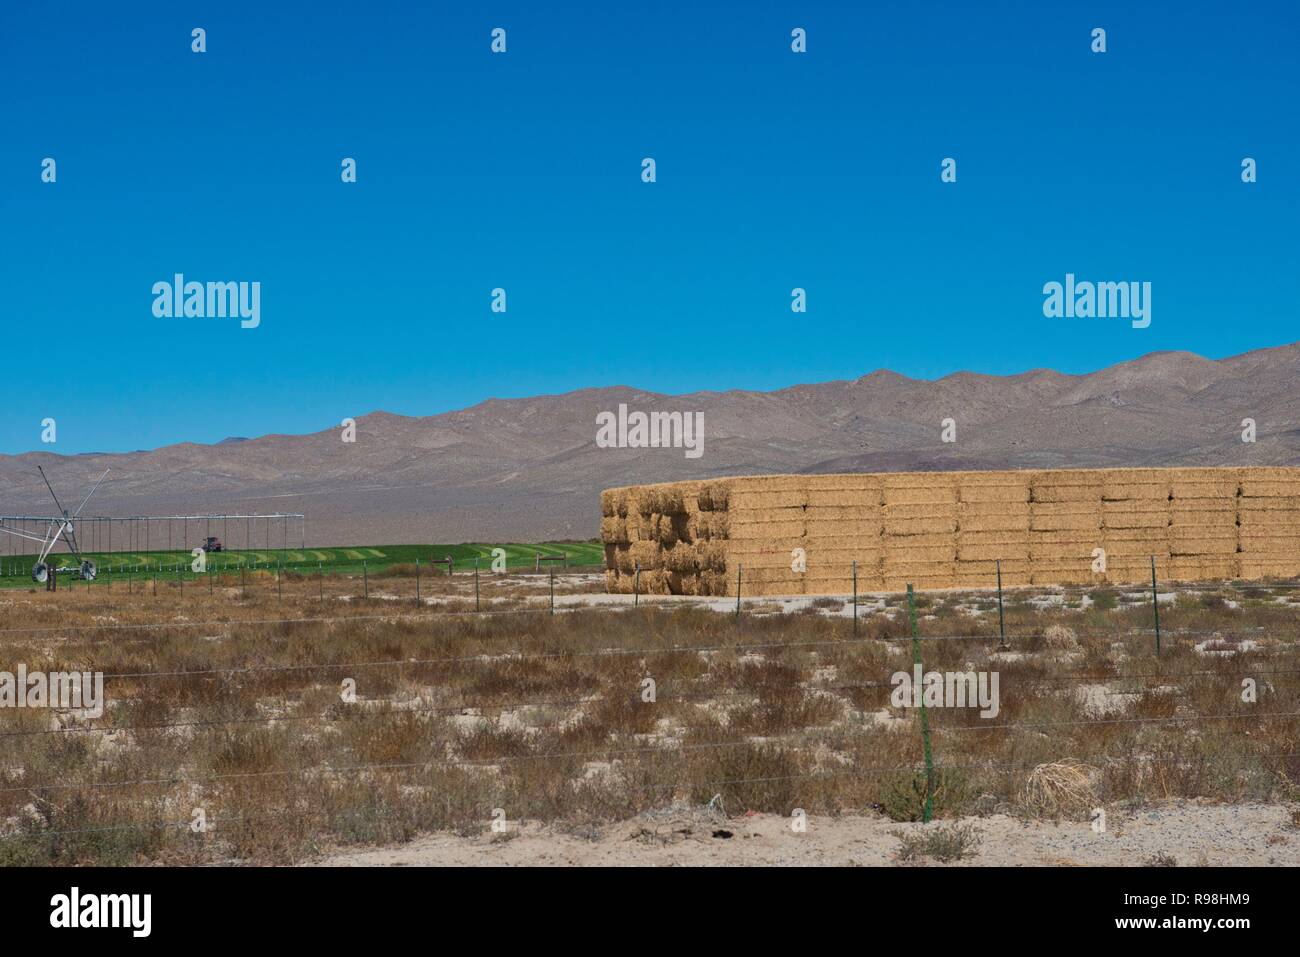 La Californie, Lida, Ranch, moment de la récolte, des balles de foin empilées Banque D'Images